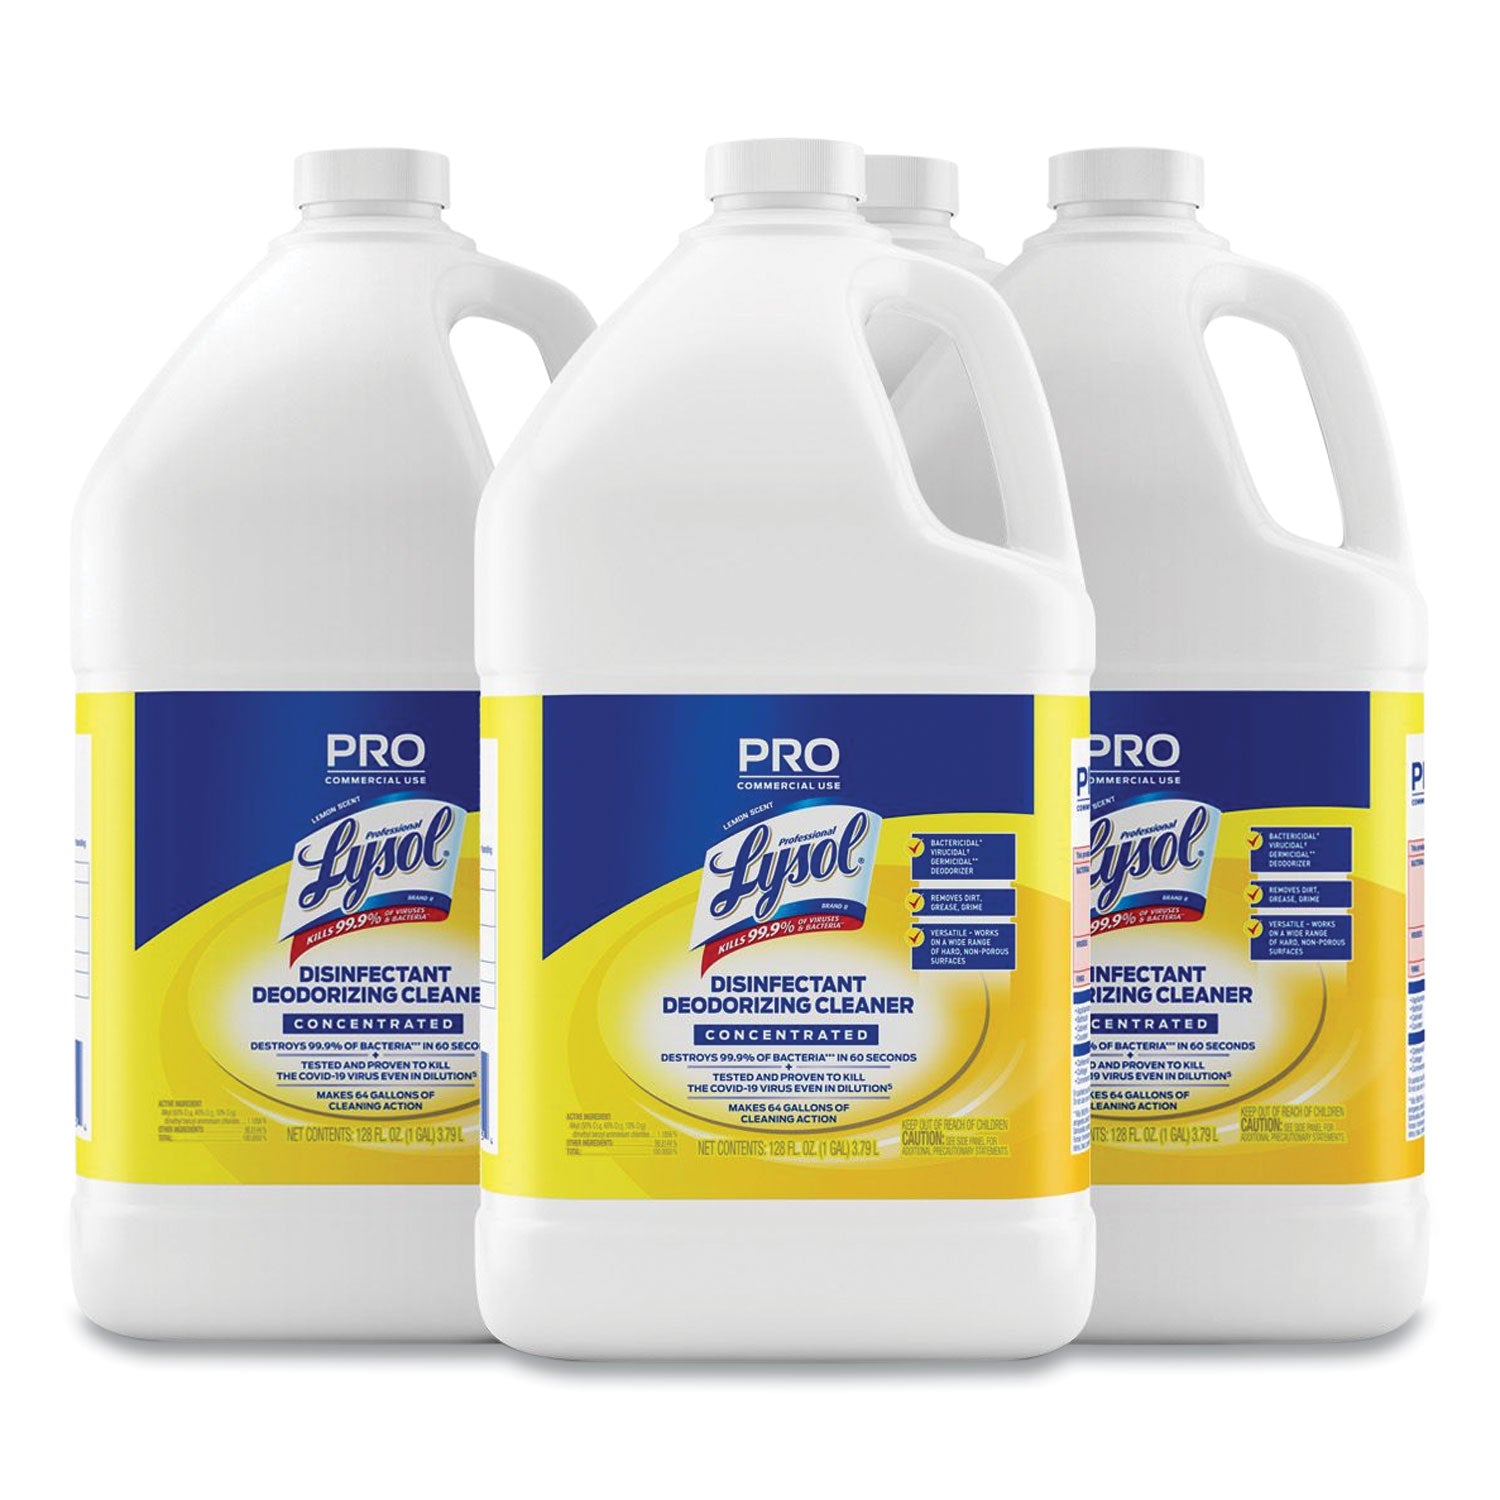 disinfectant-deodorizing-cleaner-concentrate-lemon-scent-128-oz-bottle-4-carton_rac99985ct - 1